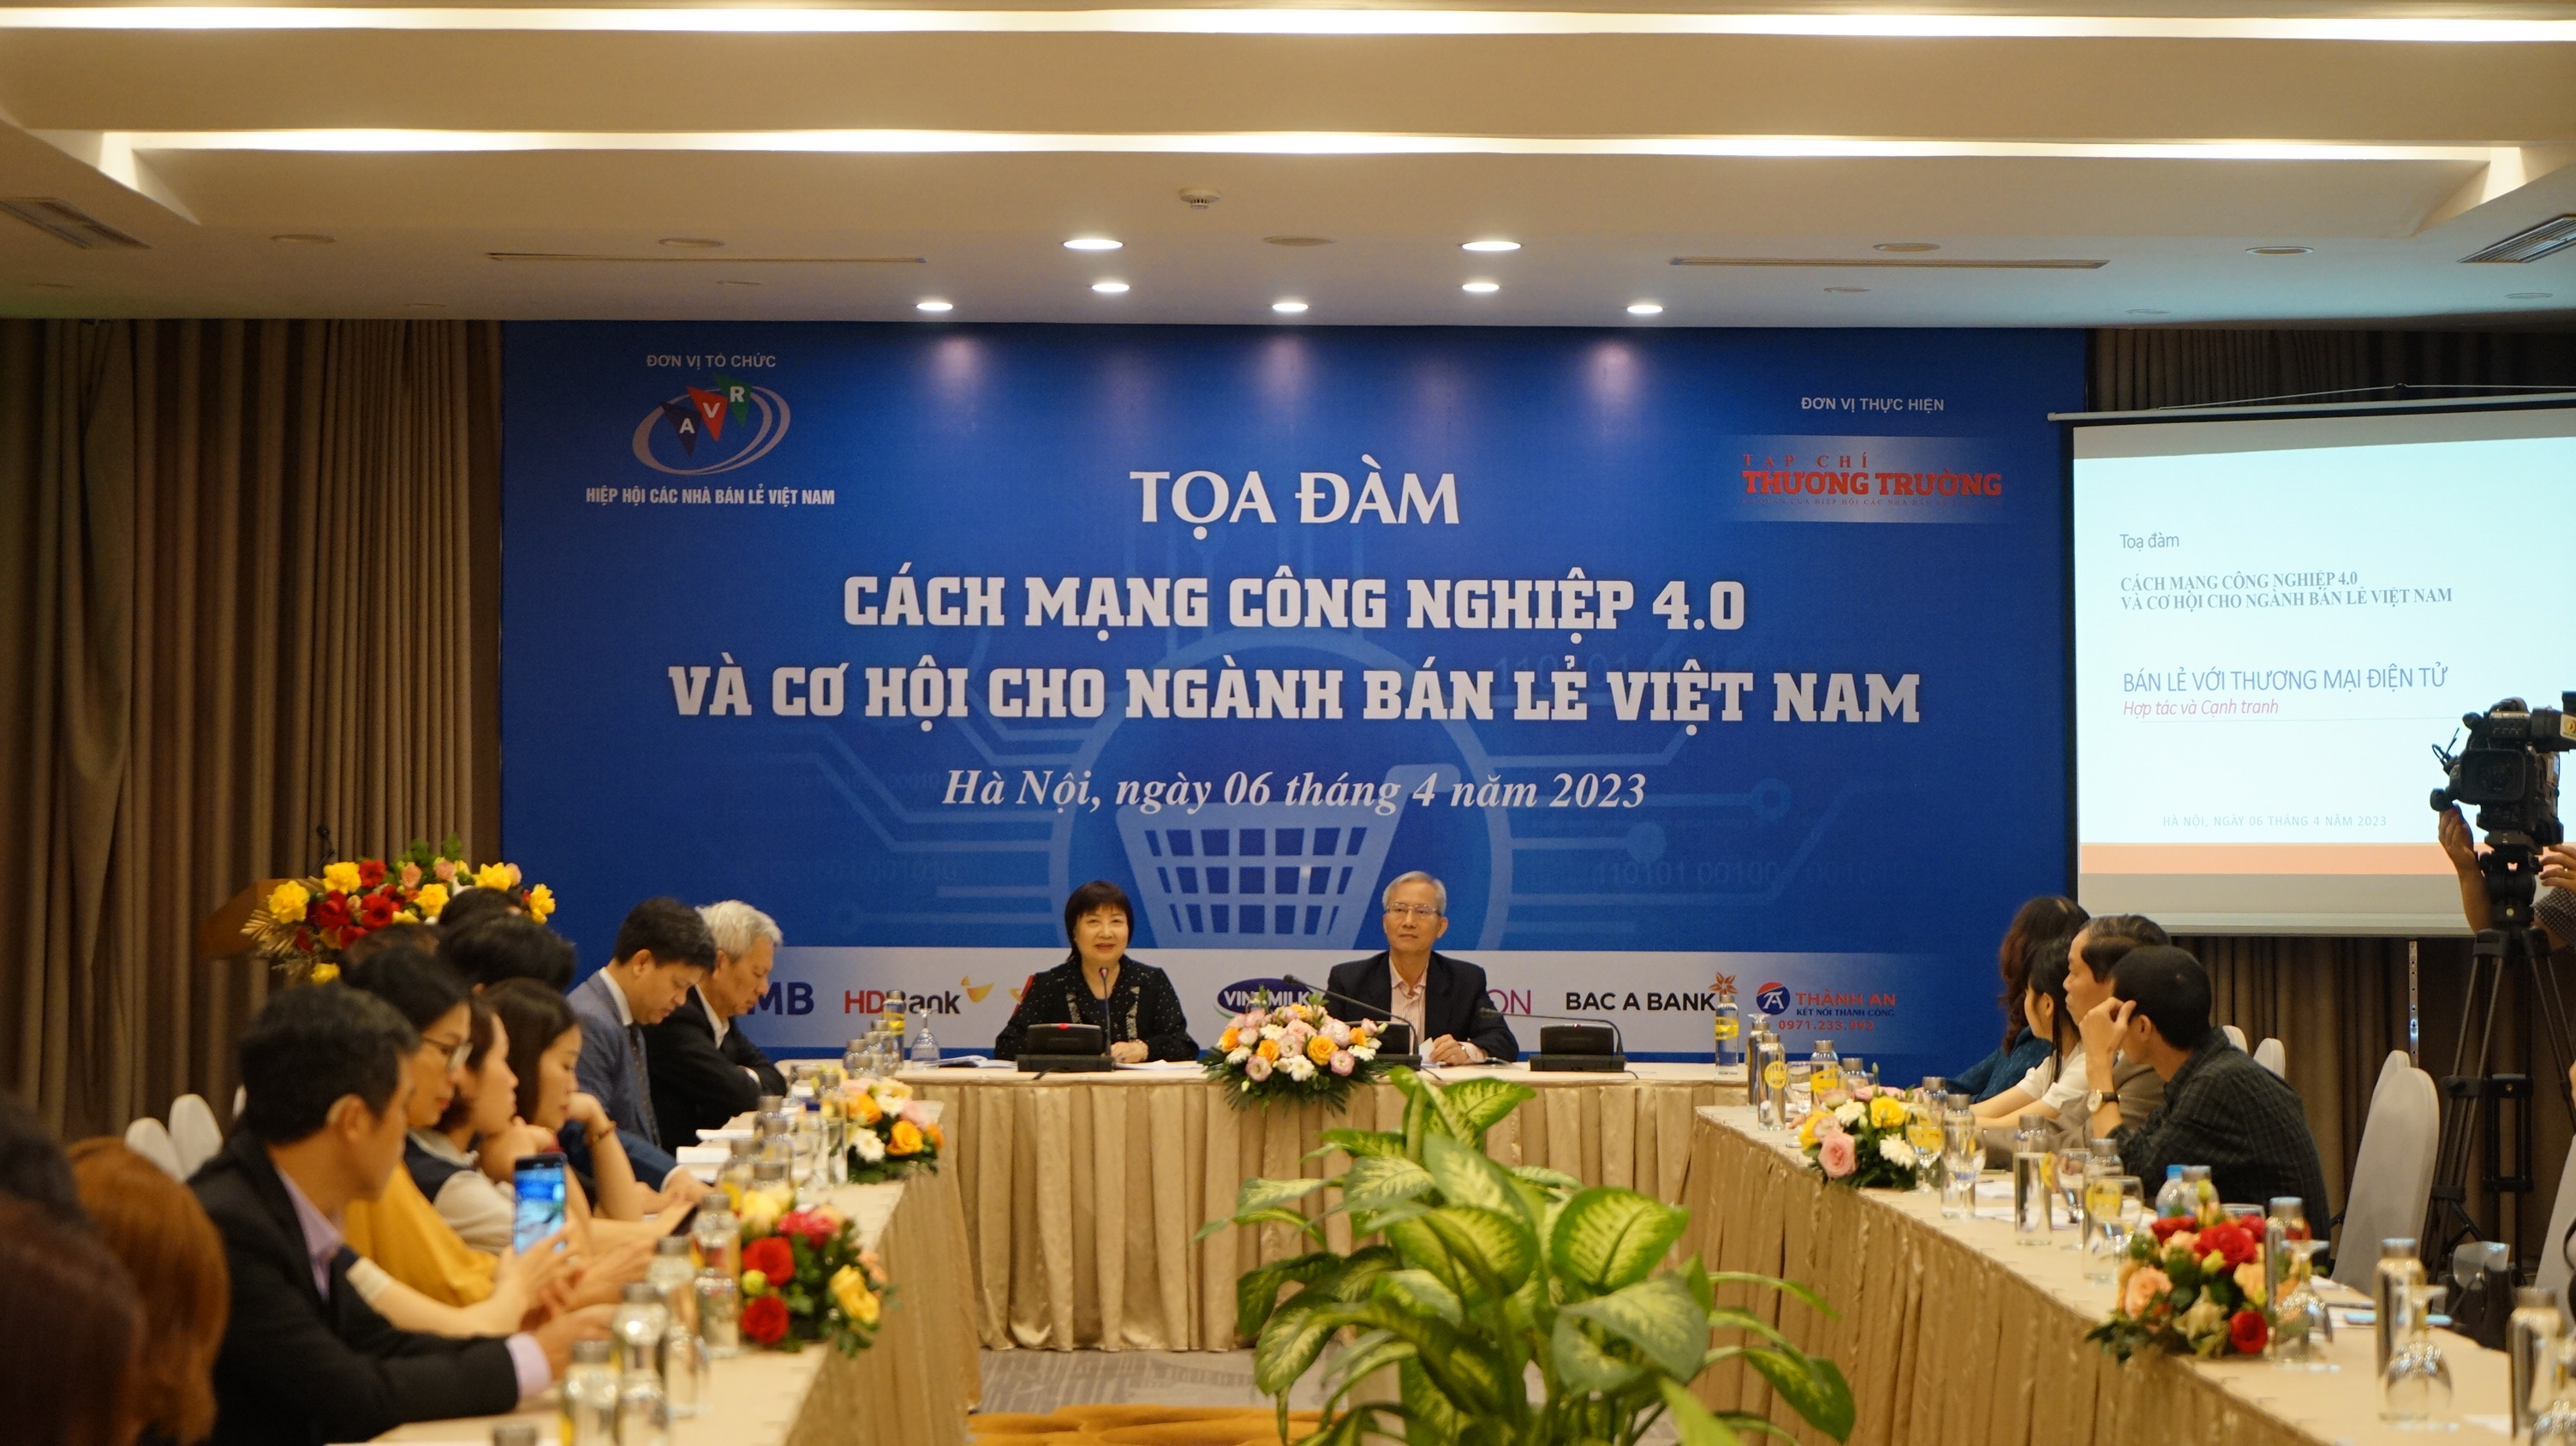 Tọa đàm 'Cách mạng công nghiệp 4.0 và cơ hội cho ngành bán lẻ Việt Nam'